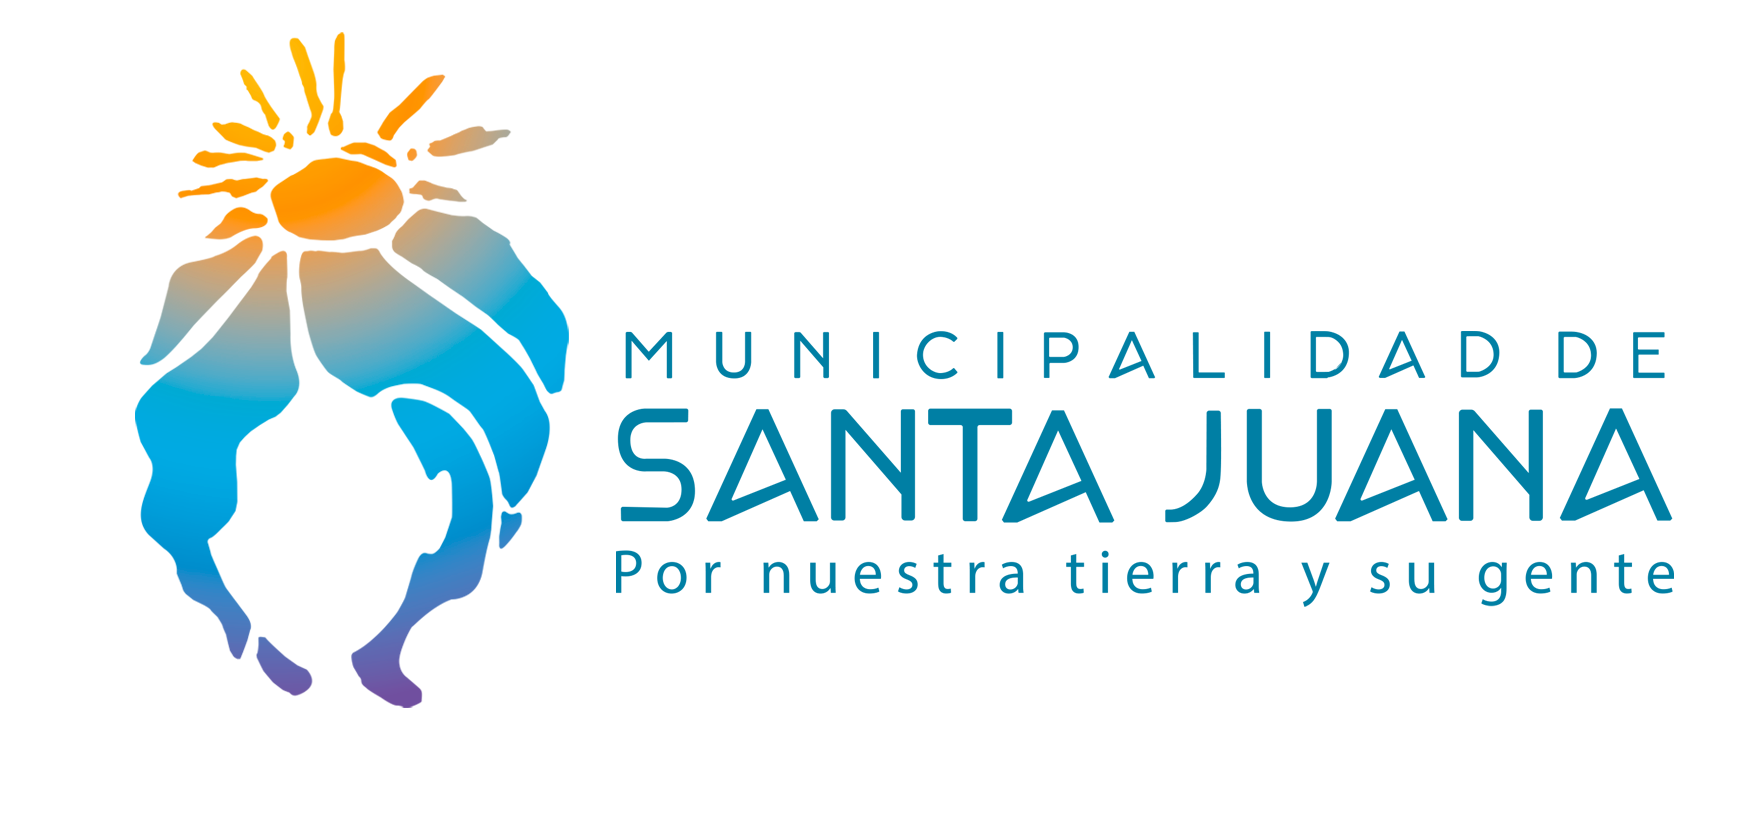 I Municipalidad de Santa Juana